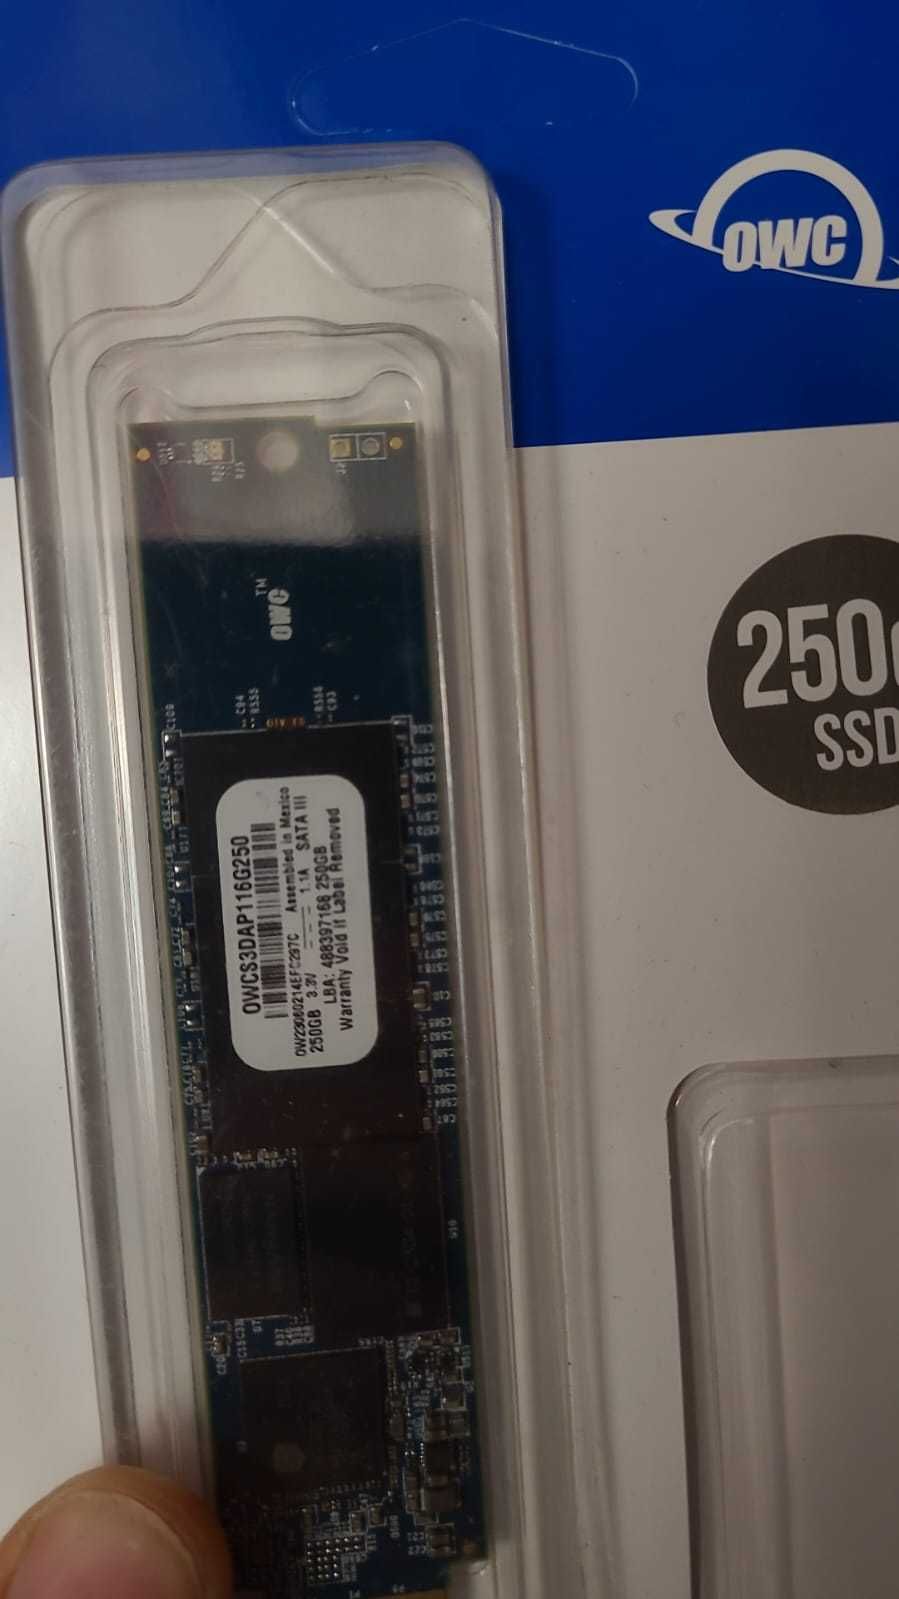 Solid State Drive (SSD) OWC Aura Pro 250 GB Macbook SSD SATA III